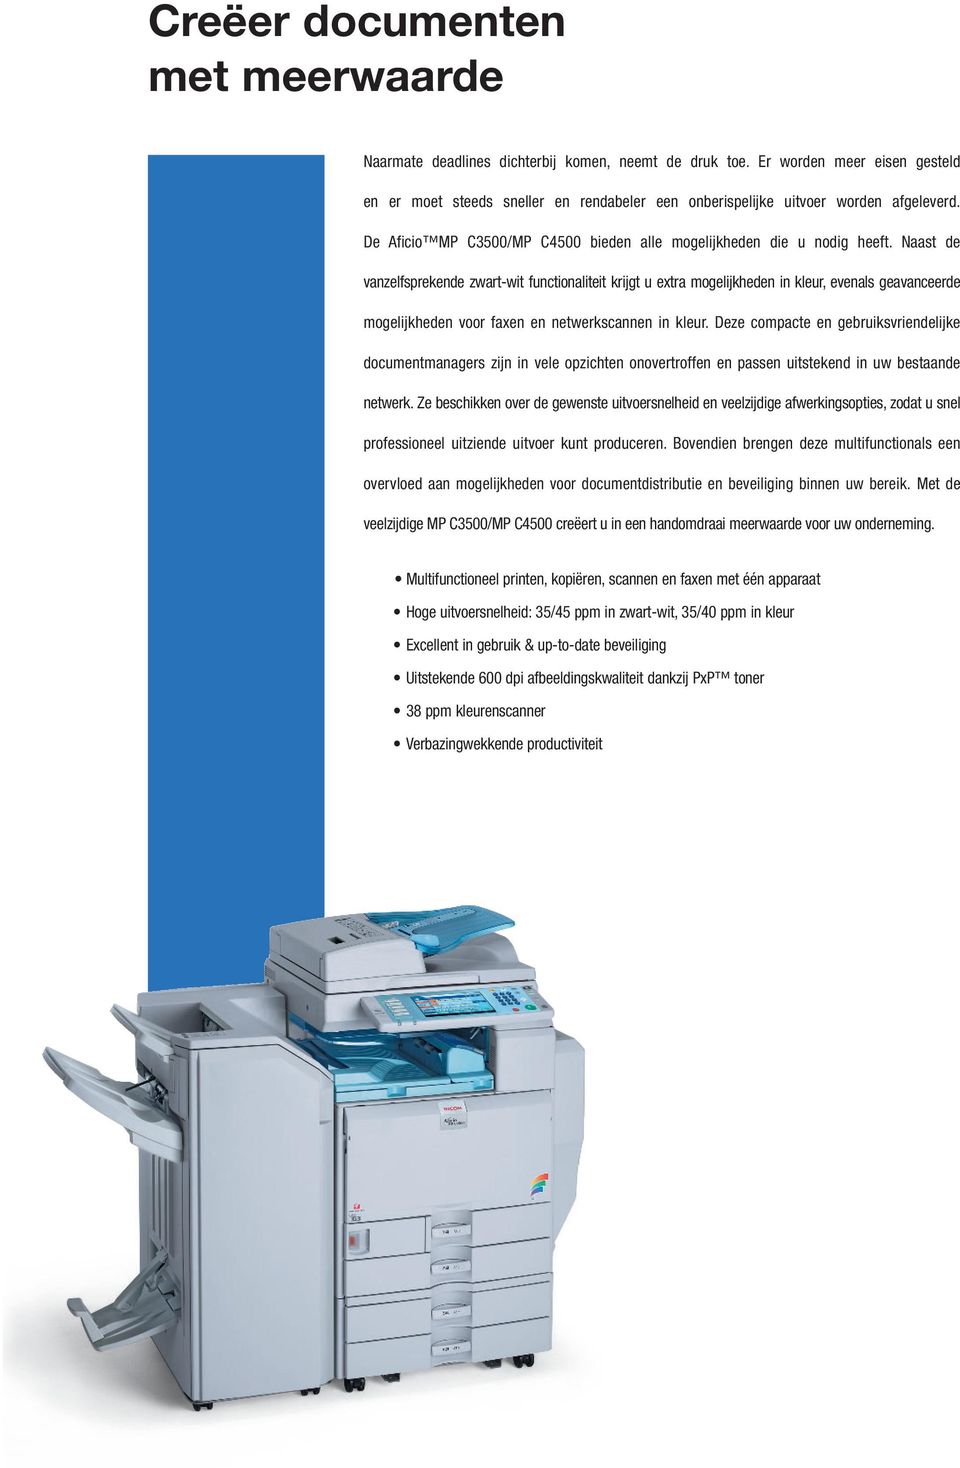 Naast de vanzelfsprekende zwart-wit functionaliteit krijgt u extra mogelijkheden in kleur, evenals geavanceerde mogelijkheden voor faxen en netwerkscannen in kleur.